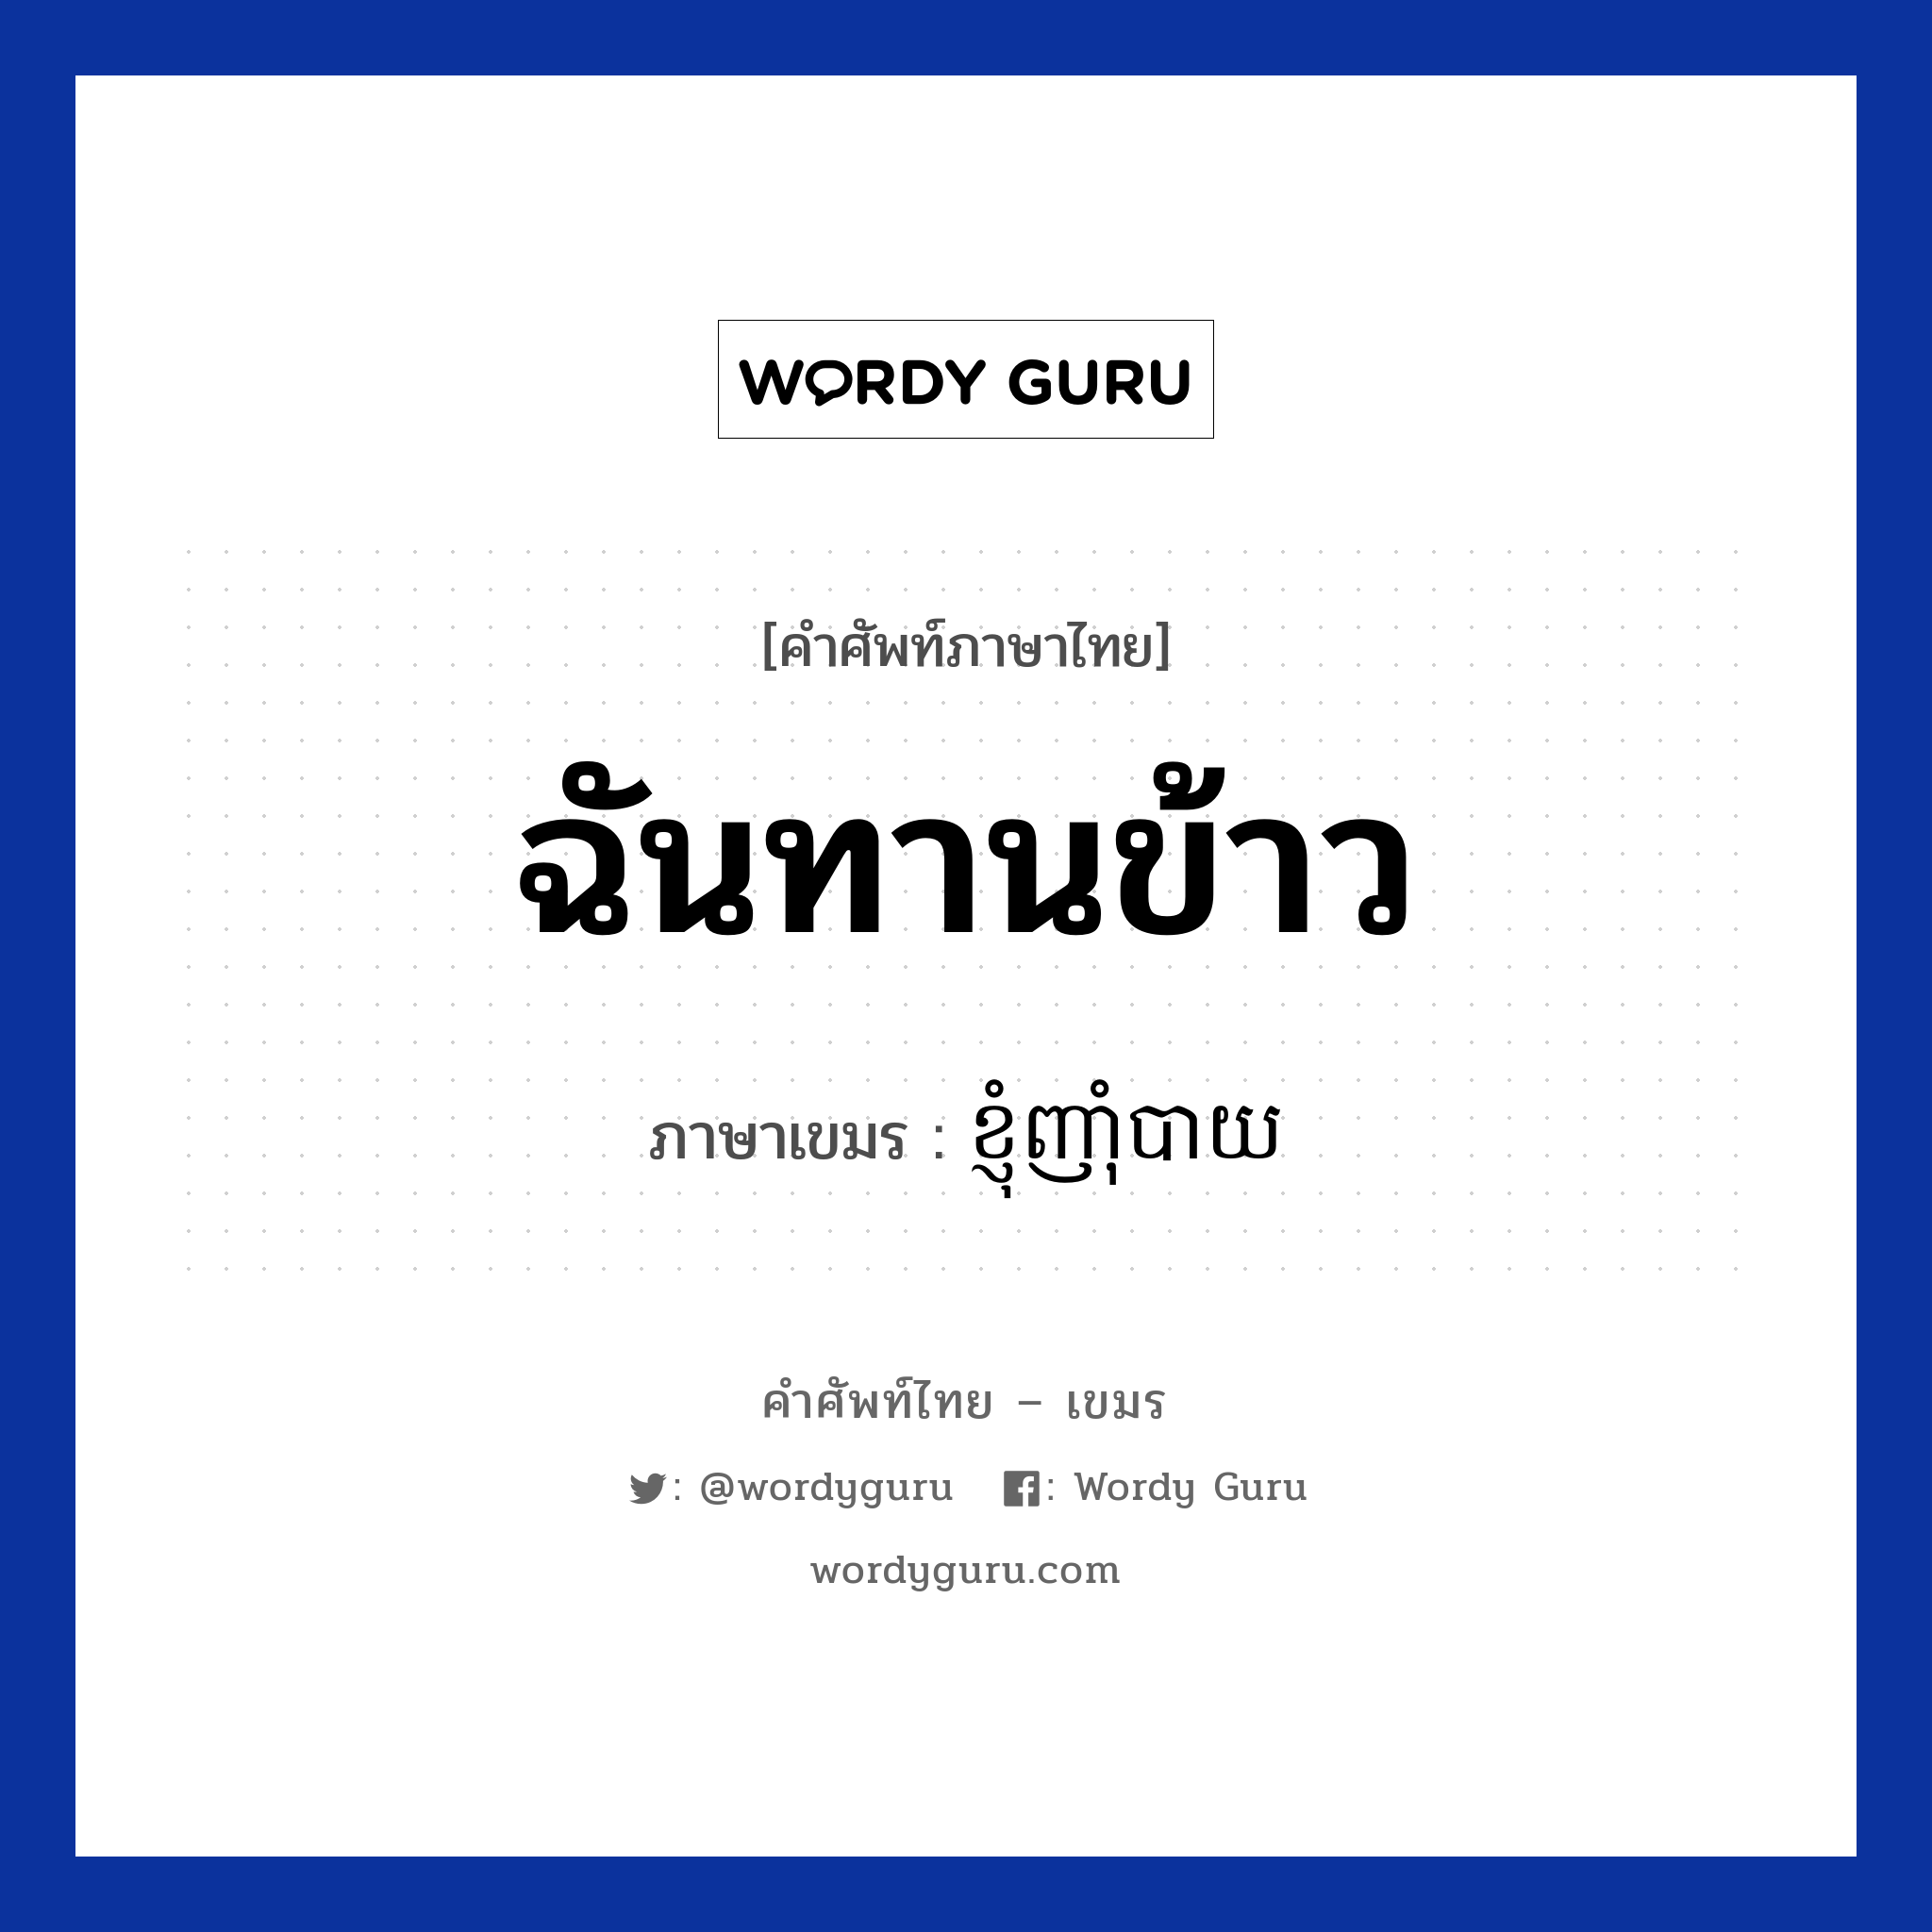 ខ្ញុំញាំុបាយ ภาษาไทย?, คำศัพท์ภาษาไทย - เขมร ខ្ញុំញាំុបាយ ภาษาเขมร ฉันทานข้าว หมวด ทักทาย Knhom nhambay หมวด ทักทาย